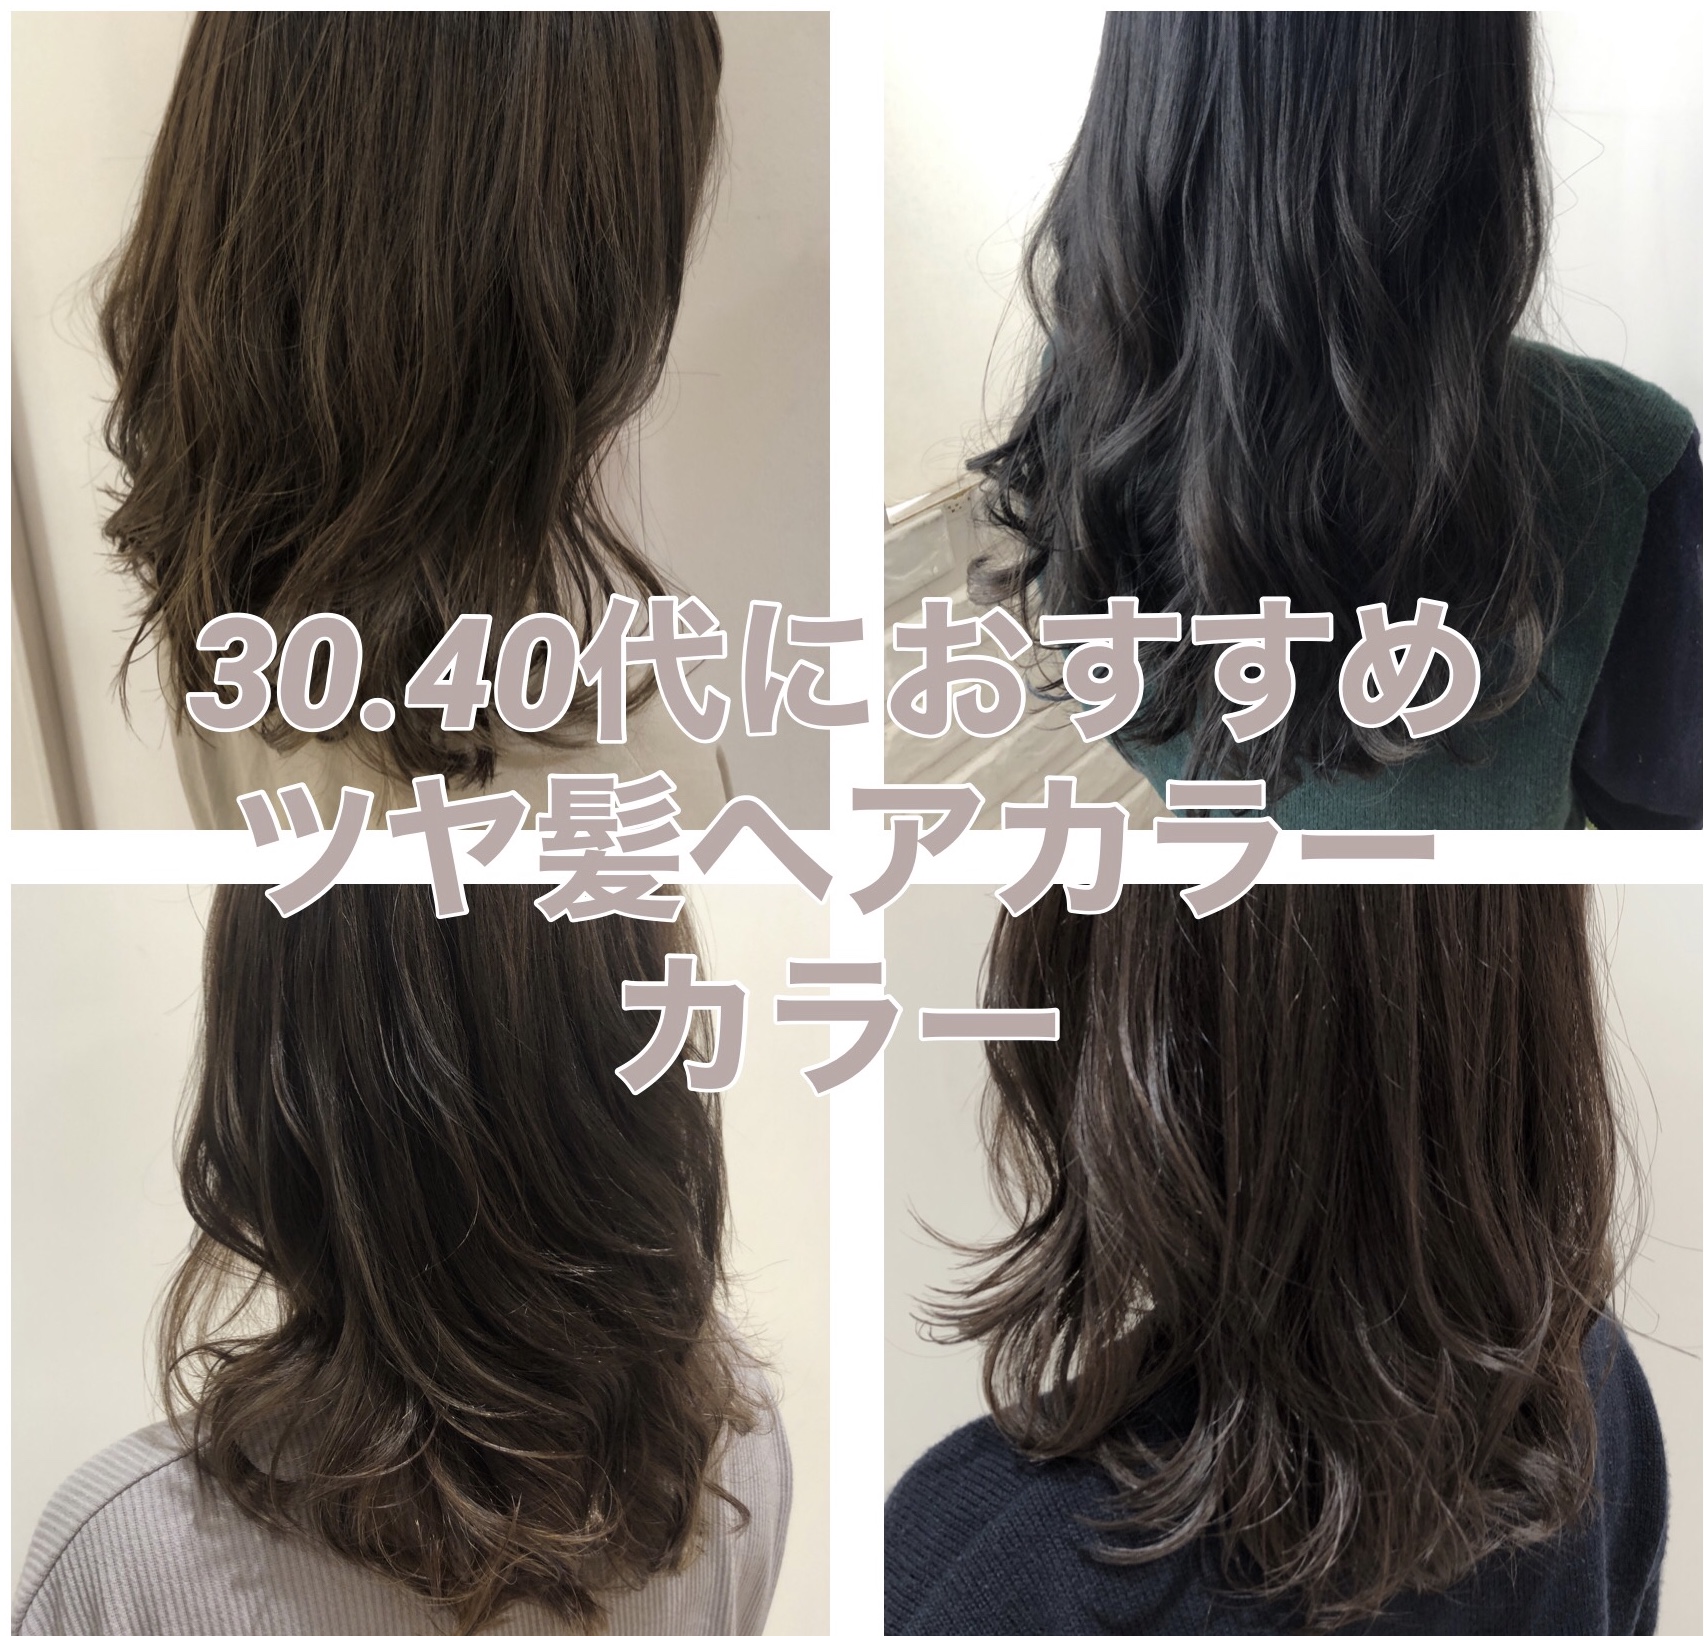 5歳を叶える30代 40代大人女性へのおすすめツヤヘアカラー 奈良 京都 大阪の美容室 ハピネス